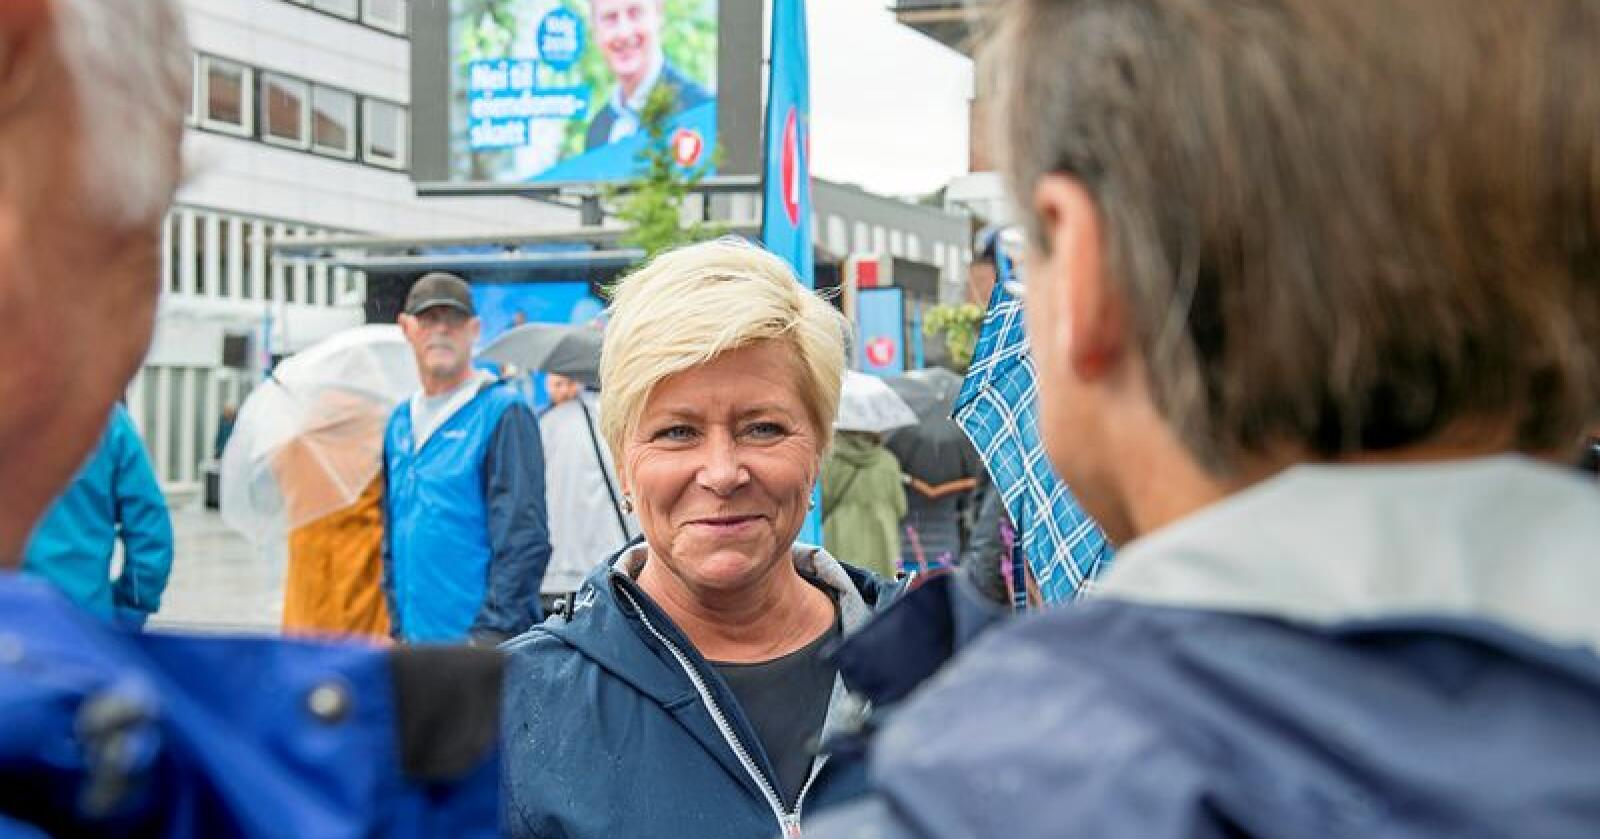 Ved forrige valg fikk Frp nesten 40 prosents oppslutning i Vestlandskommunen Os. Lørdag åpnet Siv Jensen kommunevalgkampen i Frp-bastionen. Foto: Marit Hommedal / NTB scanpix